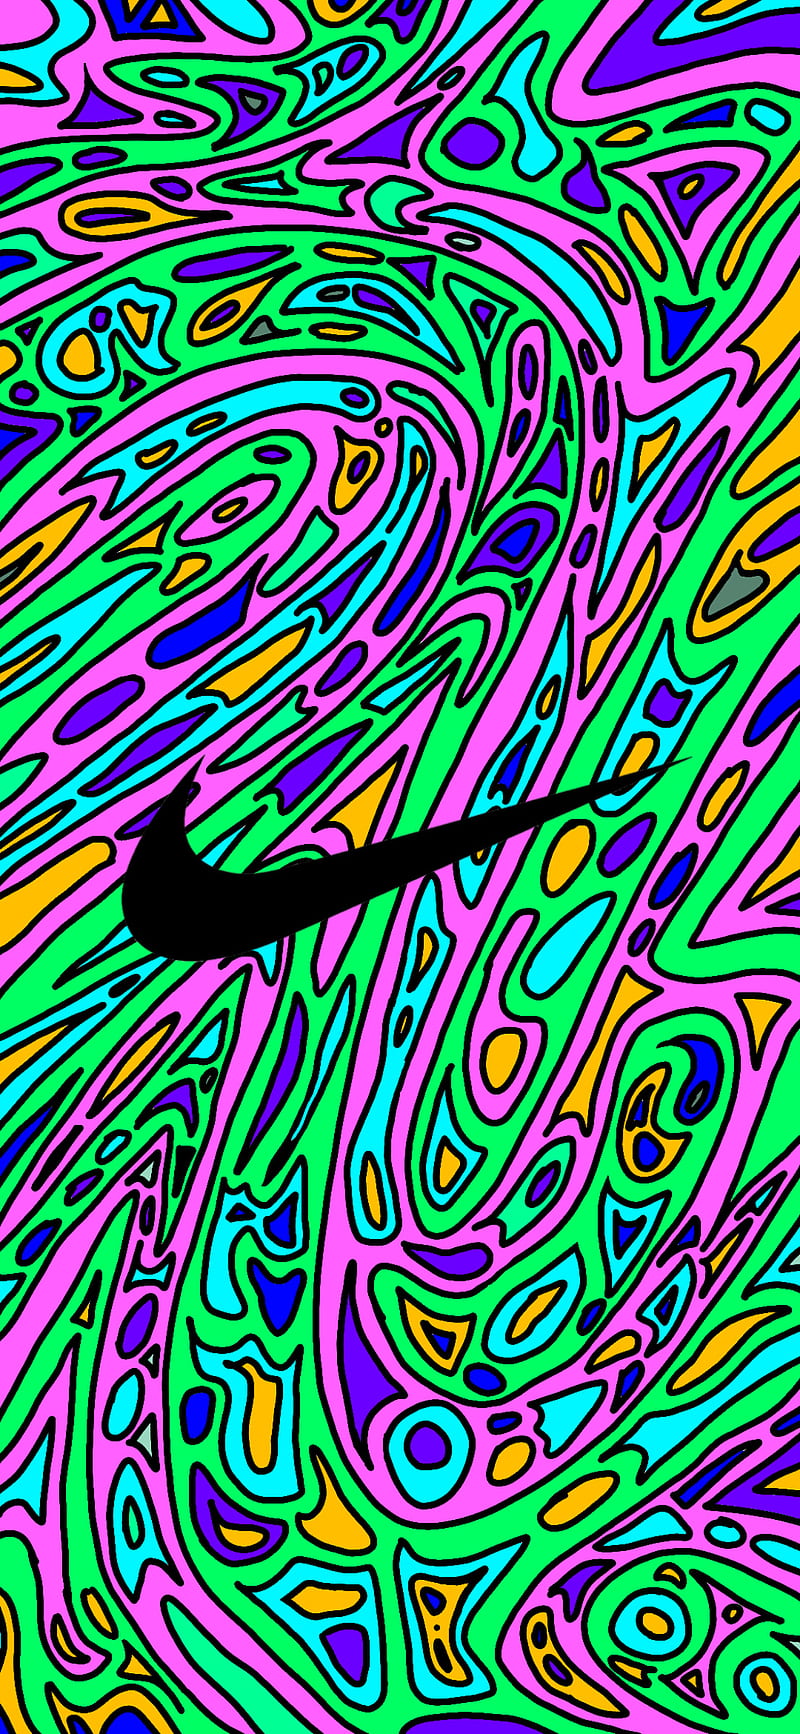 Hình ảnh Nike giật giật sẽ khiến bạn phải ngạc nhiên với những đường nét, hiệu ứng và sắc màu tinh tế. Hãy xem ngay để khám phá những điều độc đáo và mới lạ trong hình ảnh của Nike!